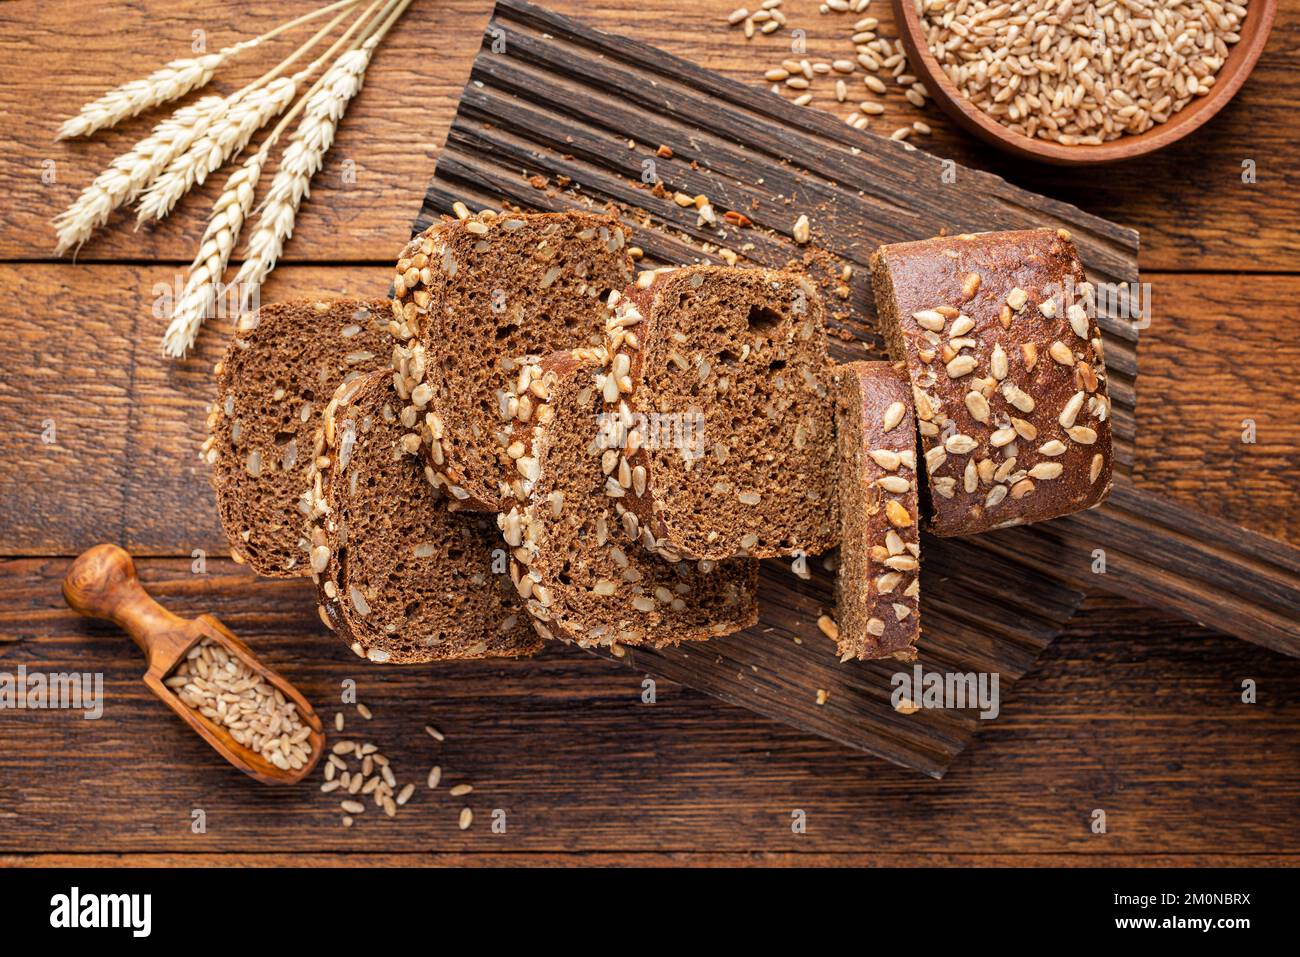 Pain de seigle de grain entier avec des graines coupées en tranches de pain sur bois, vue de dessus Banque D'Images